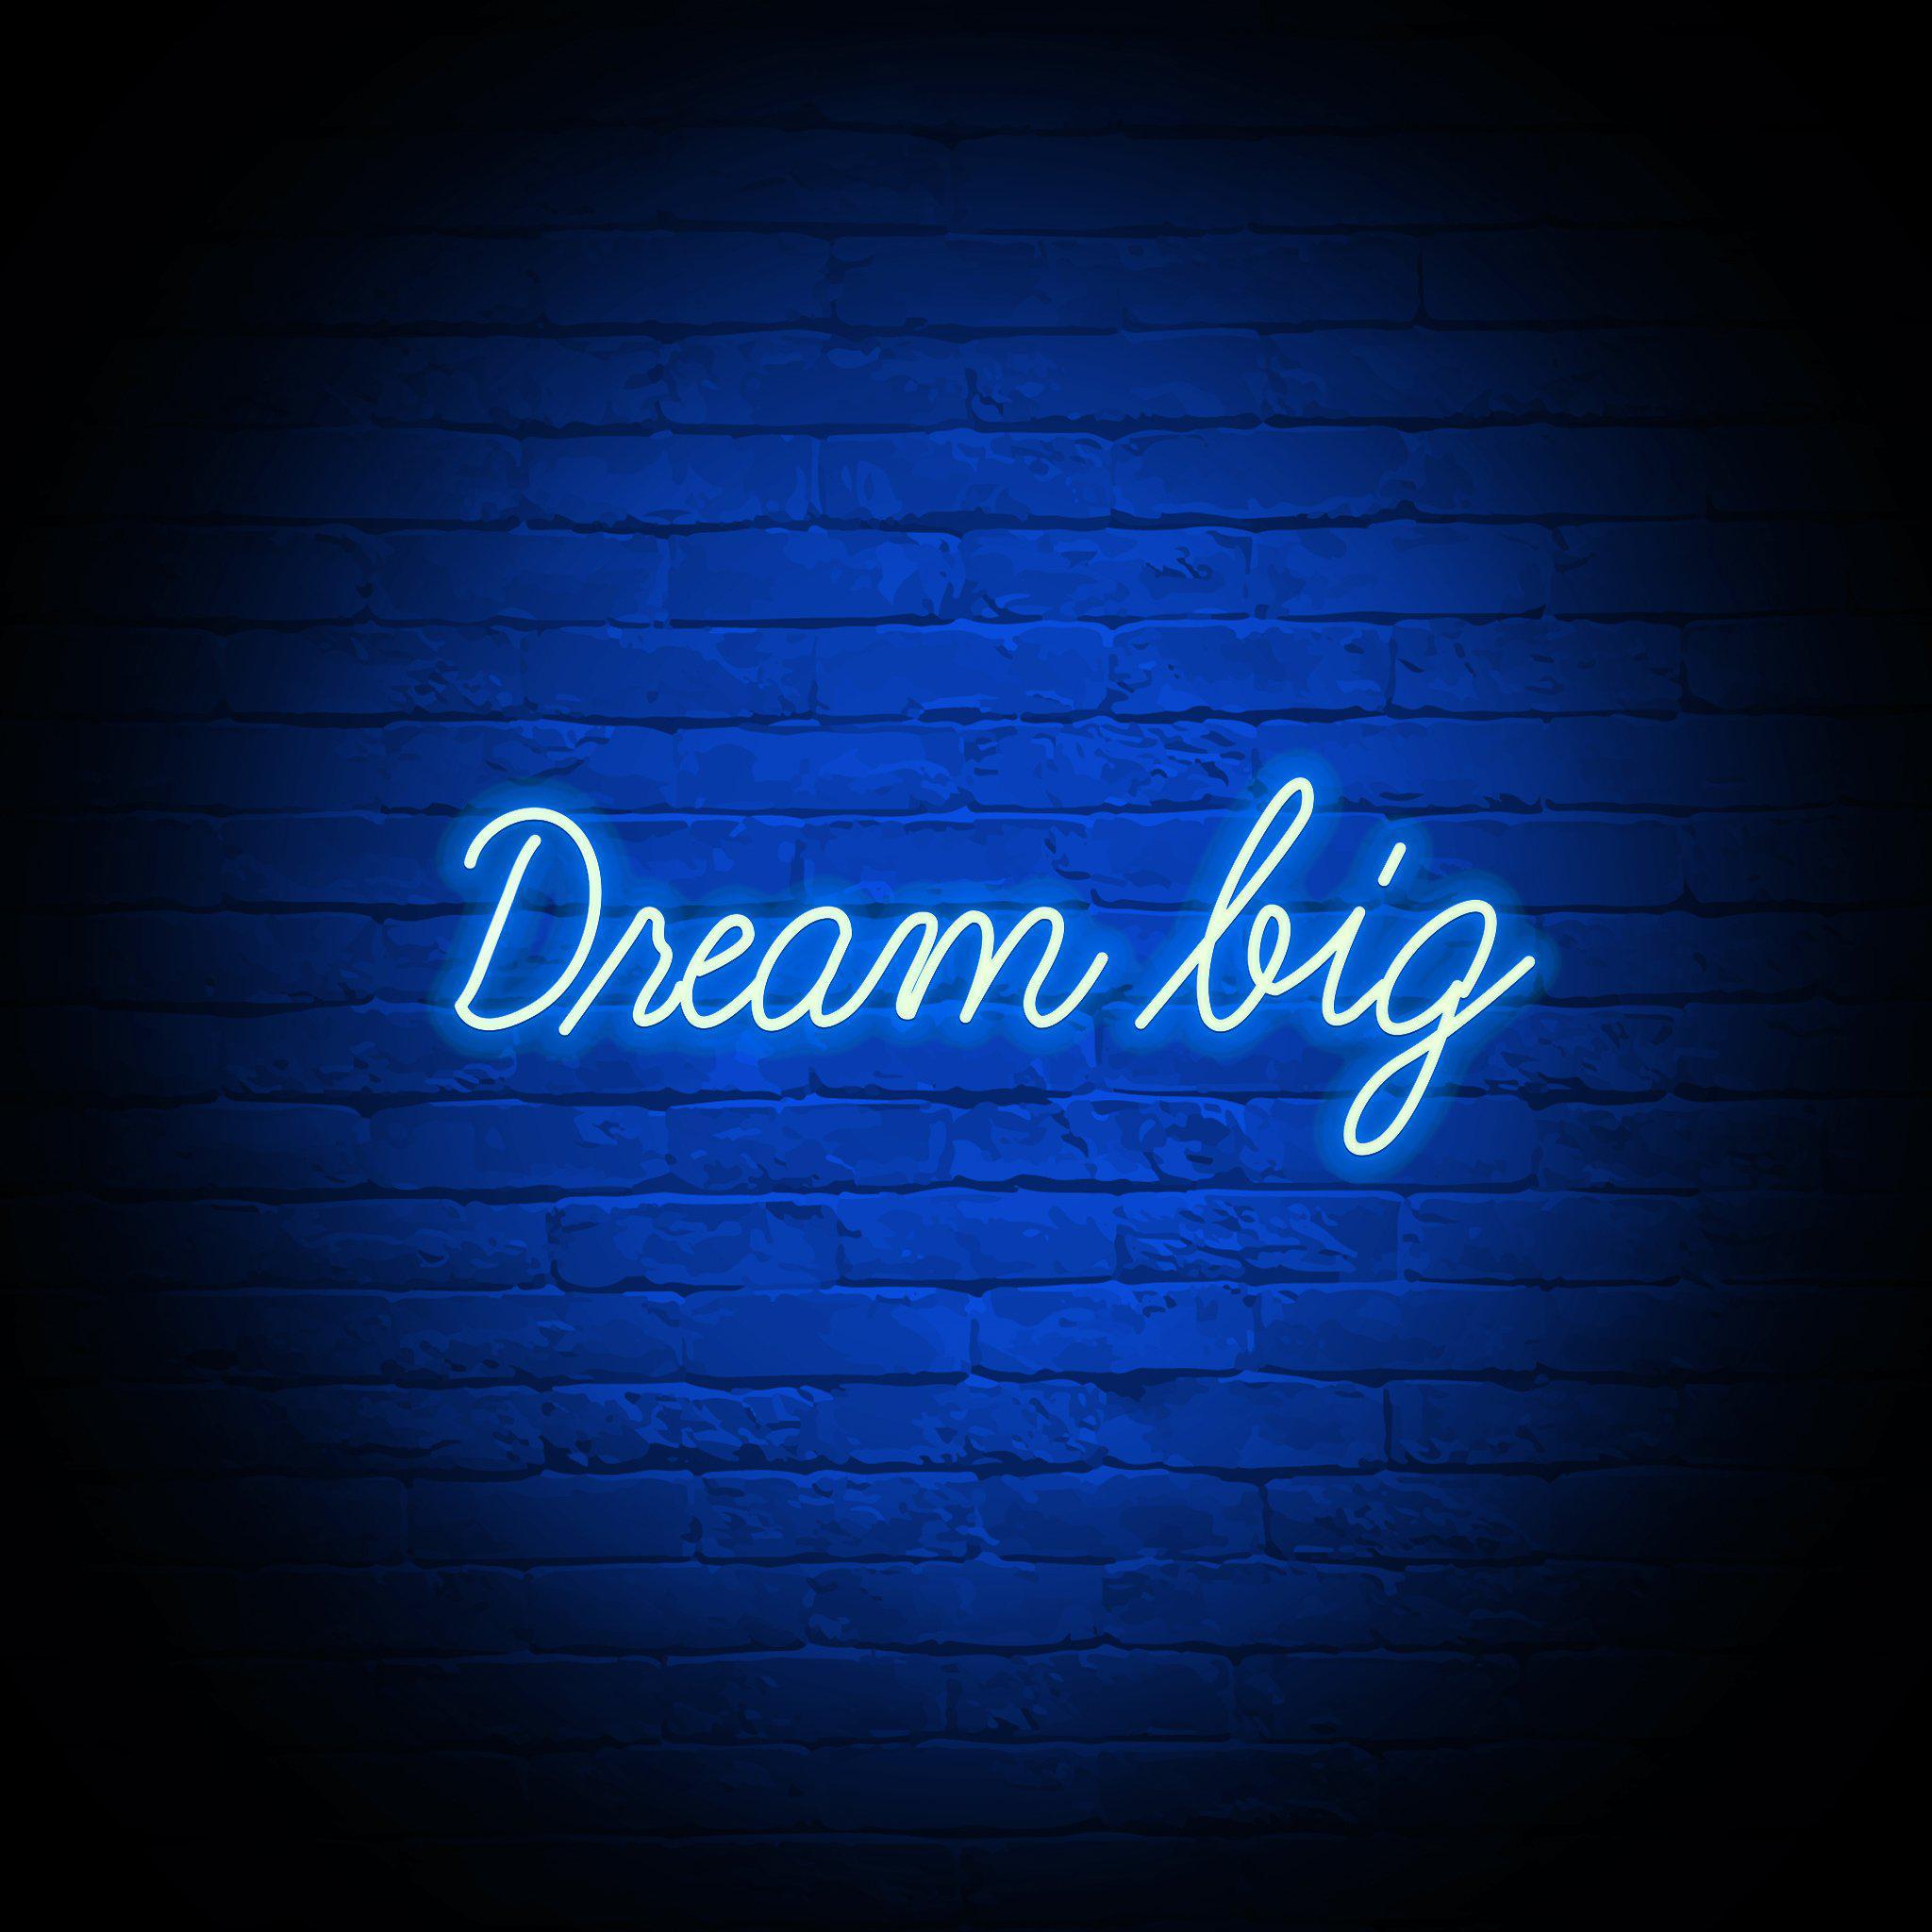 'DREAM BIG' NEON SIGN